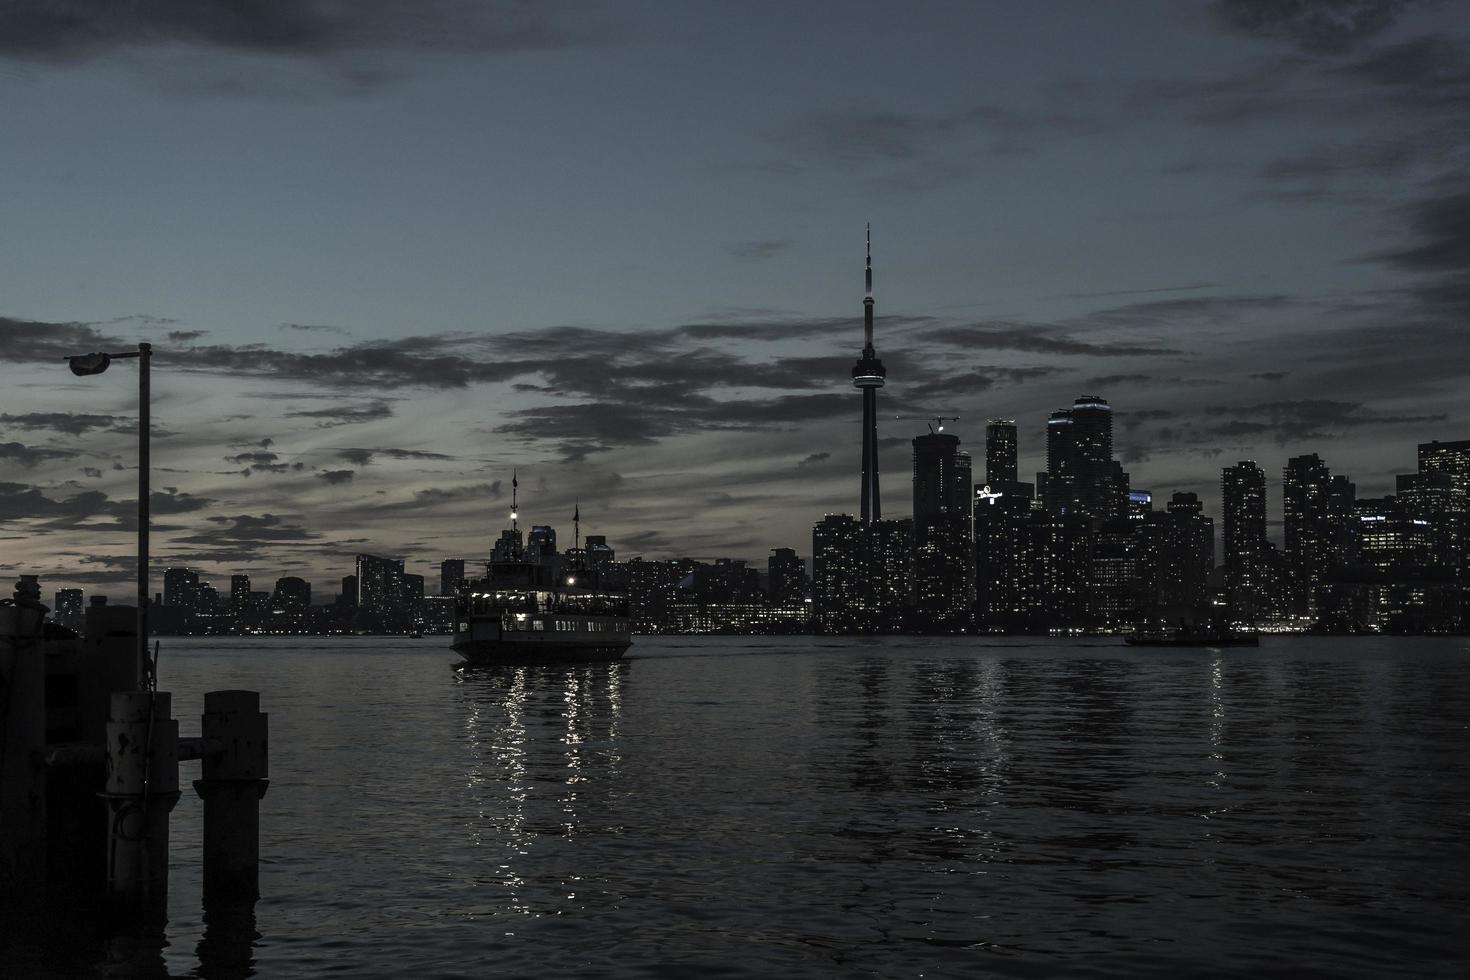 de Toronto kustlijn Bij laat zonsondergang met een passagier veerboot kruispunt tussen centrum eiland en toronto. foto